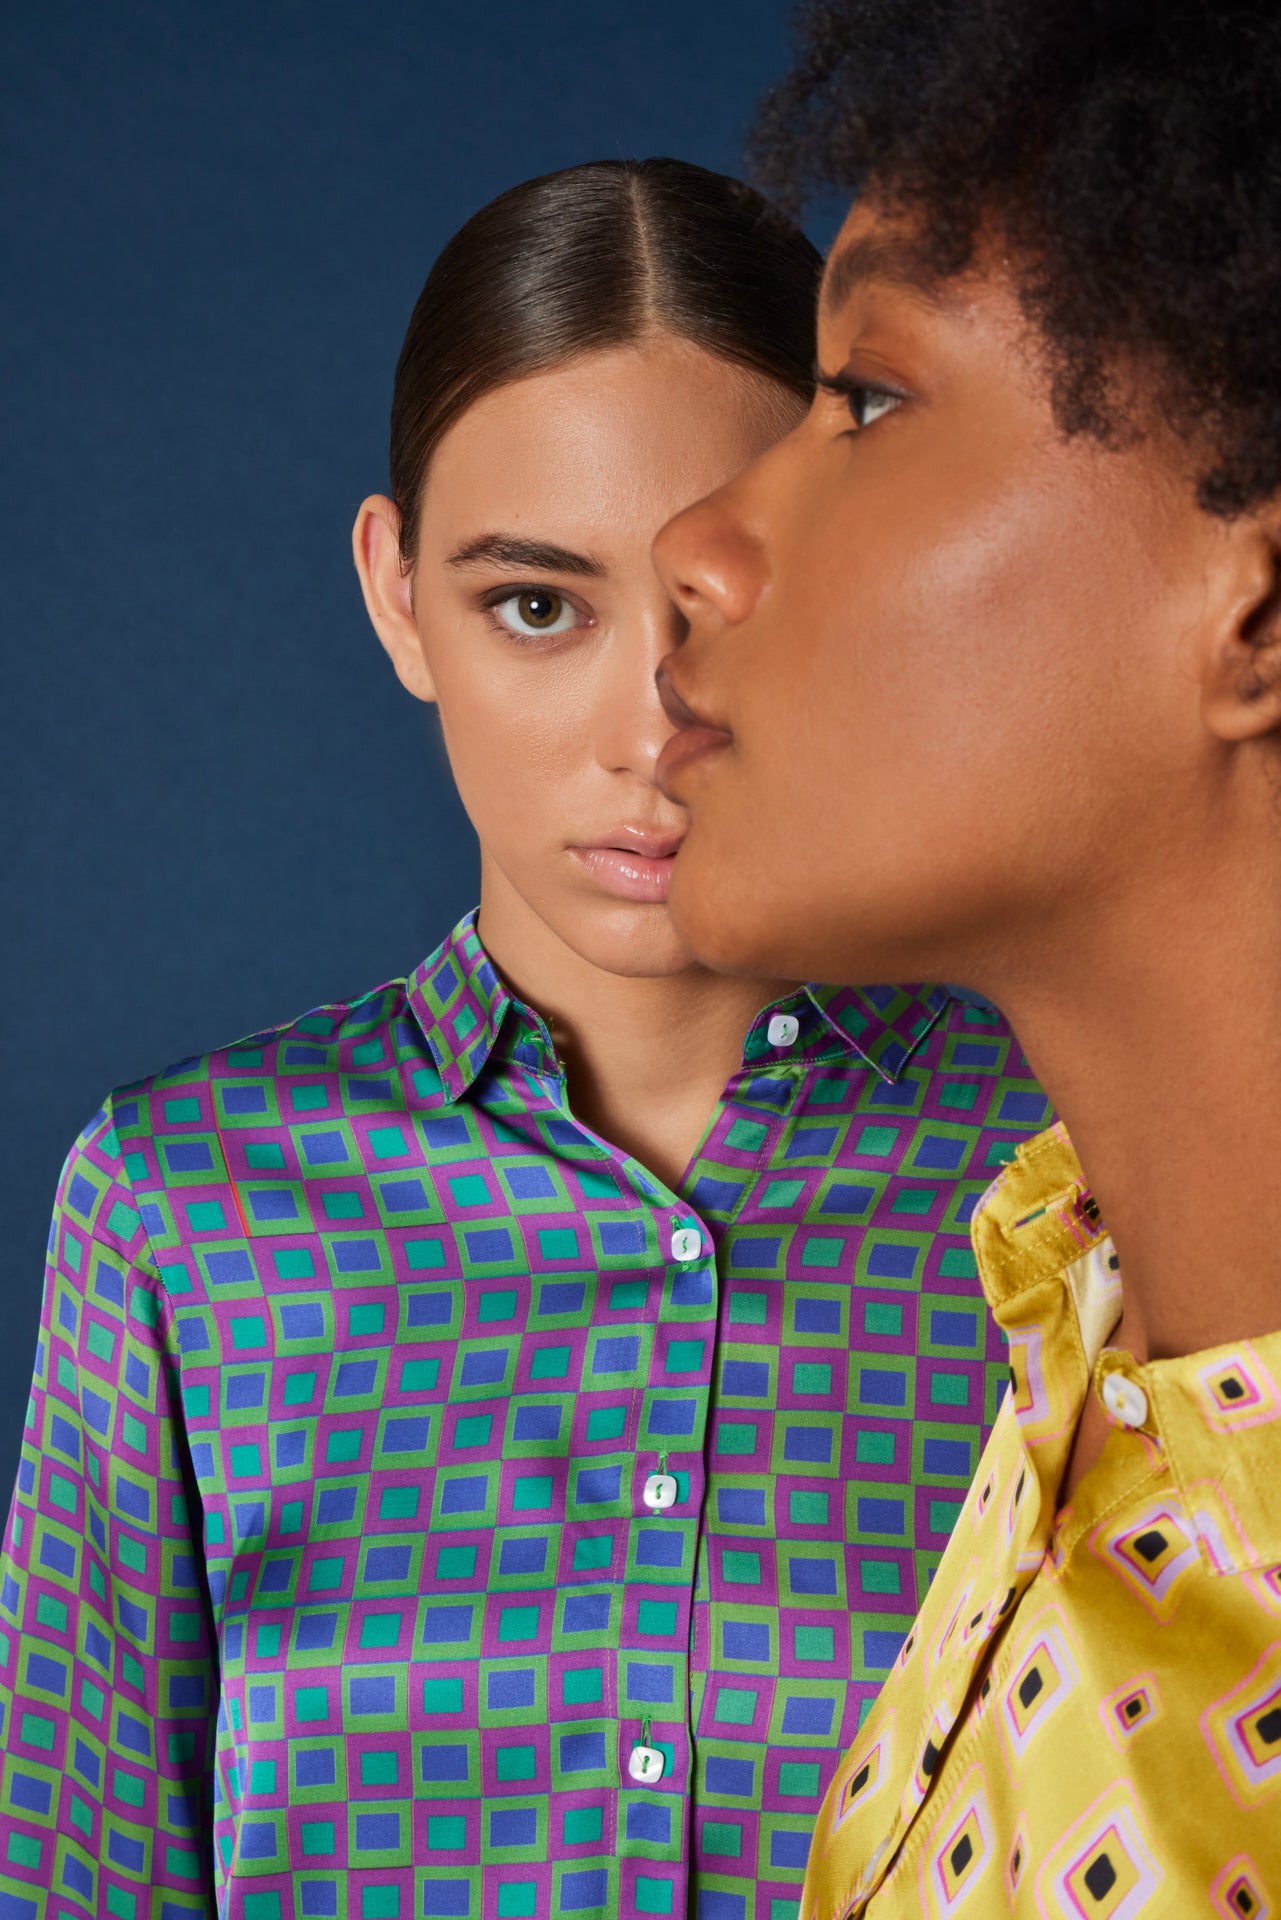 Camicie bluse camicette particolari eleganti colorate donna made in Italy 